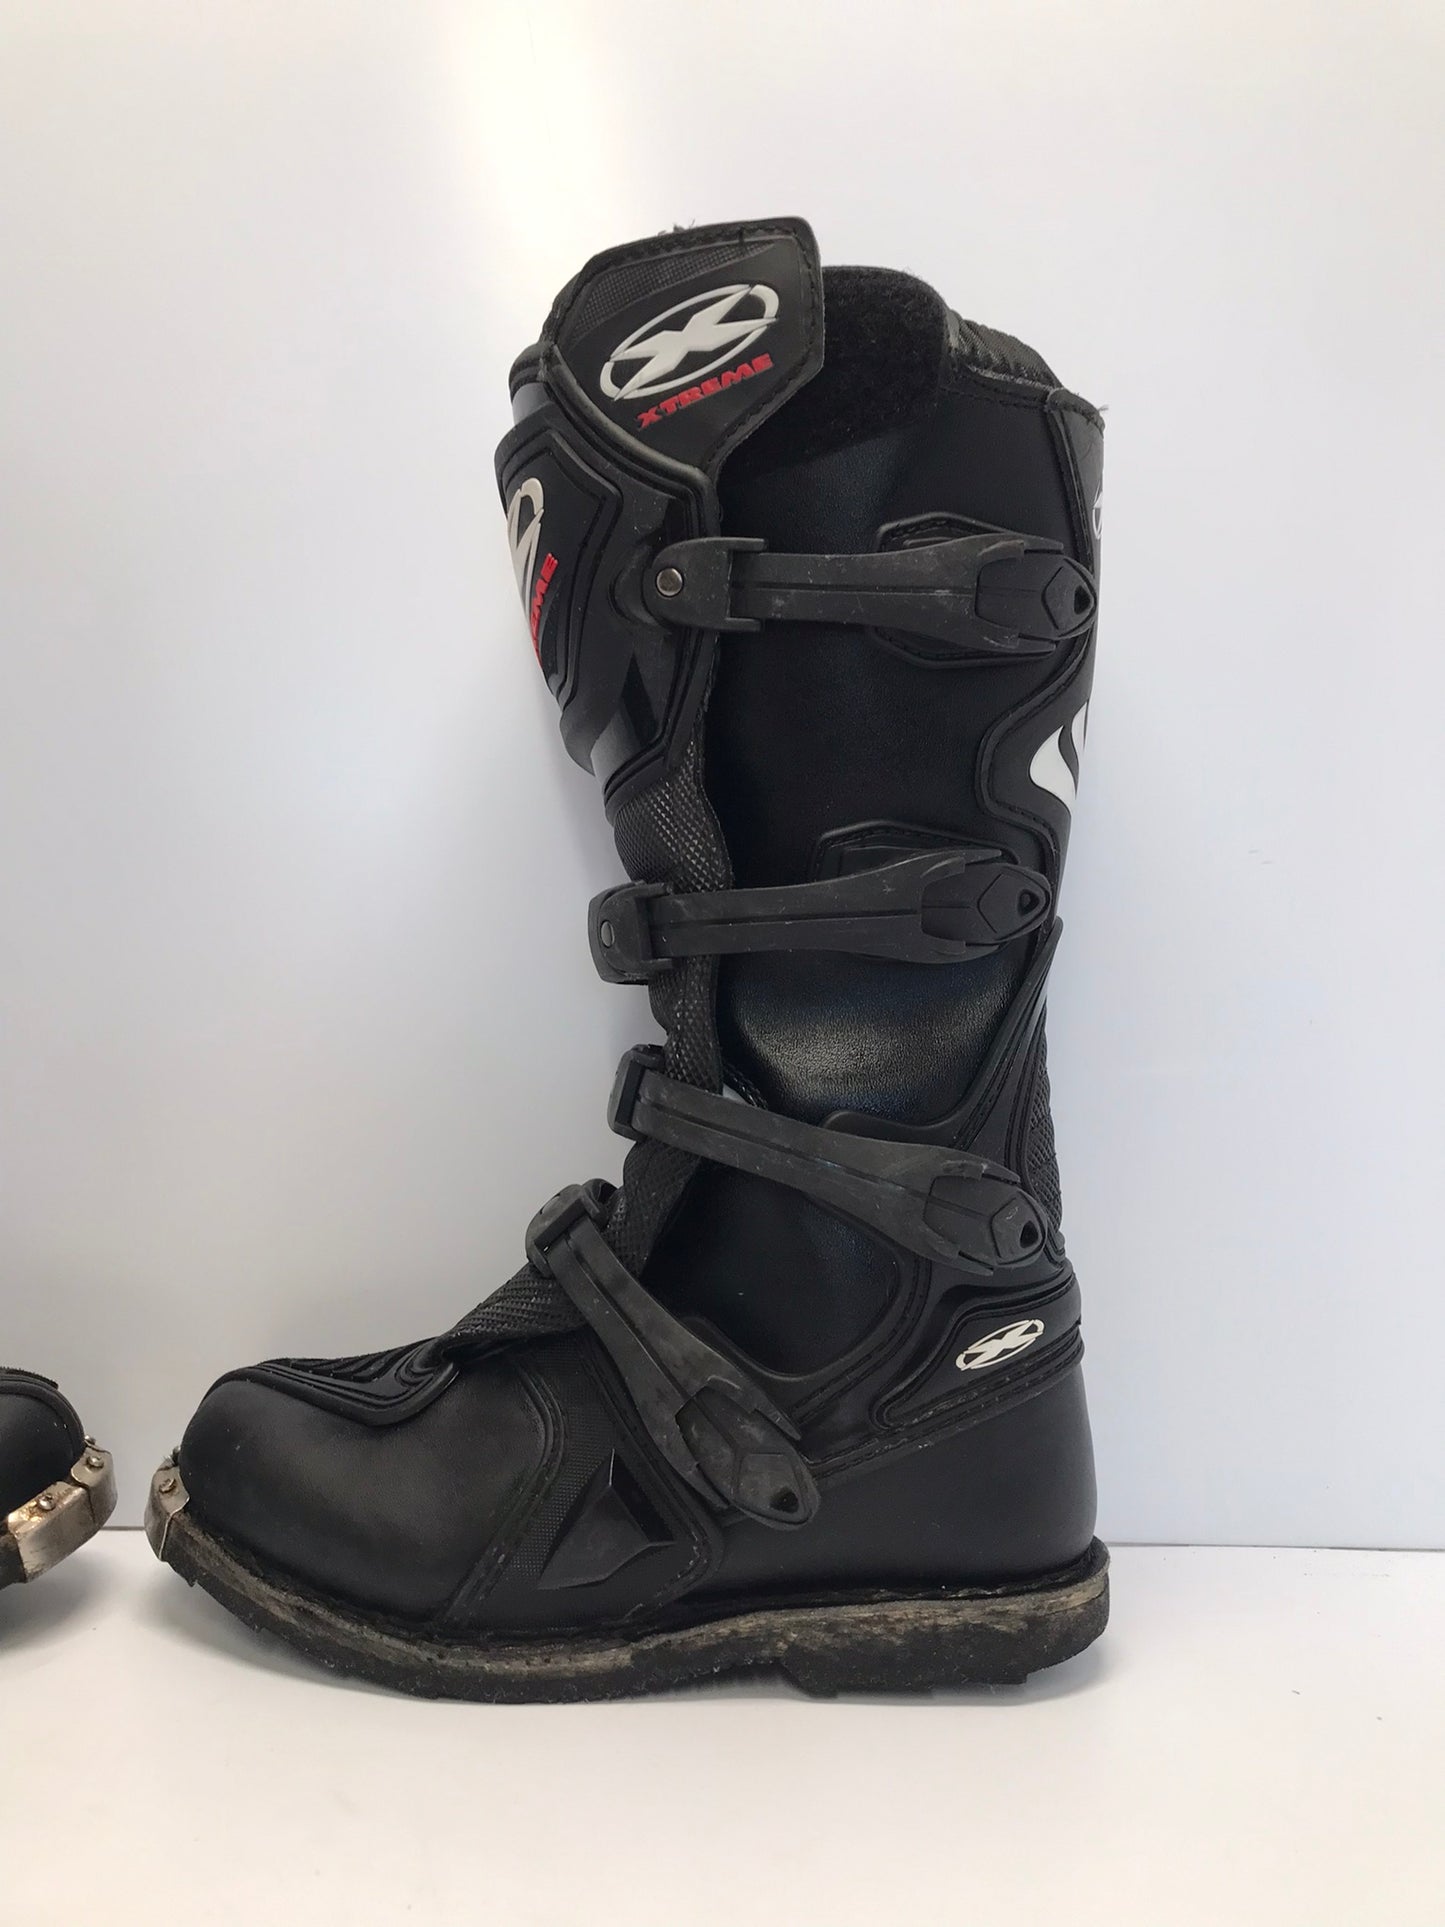 Motocross BMX Dirt Bike Riding Boots Men's Size 7 Xtreme Black Excellent